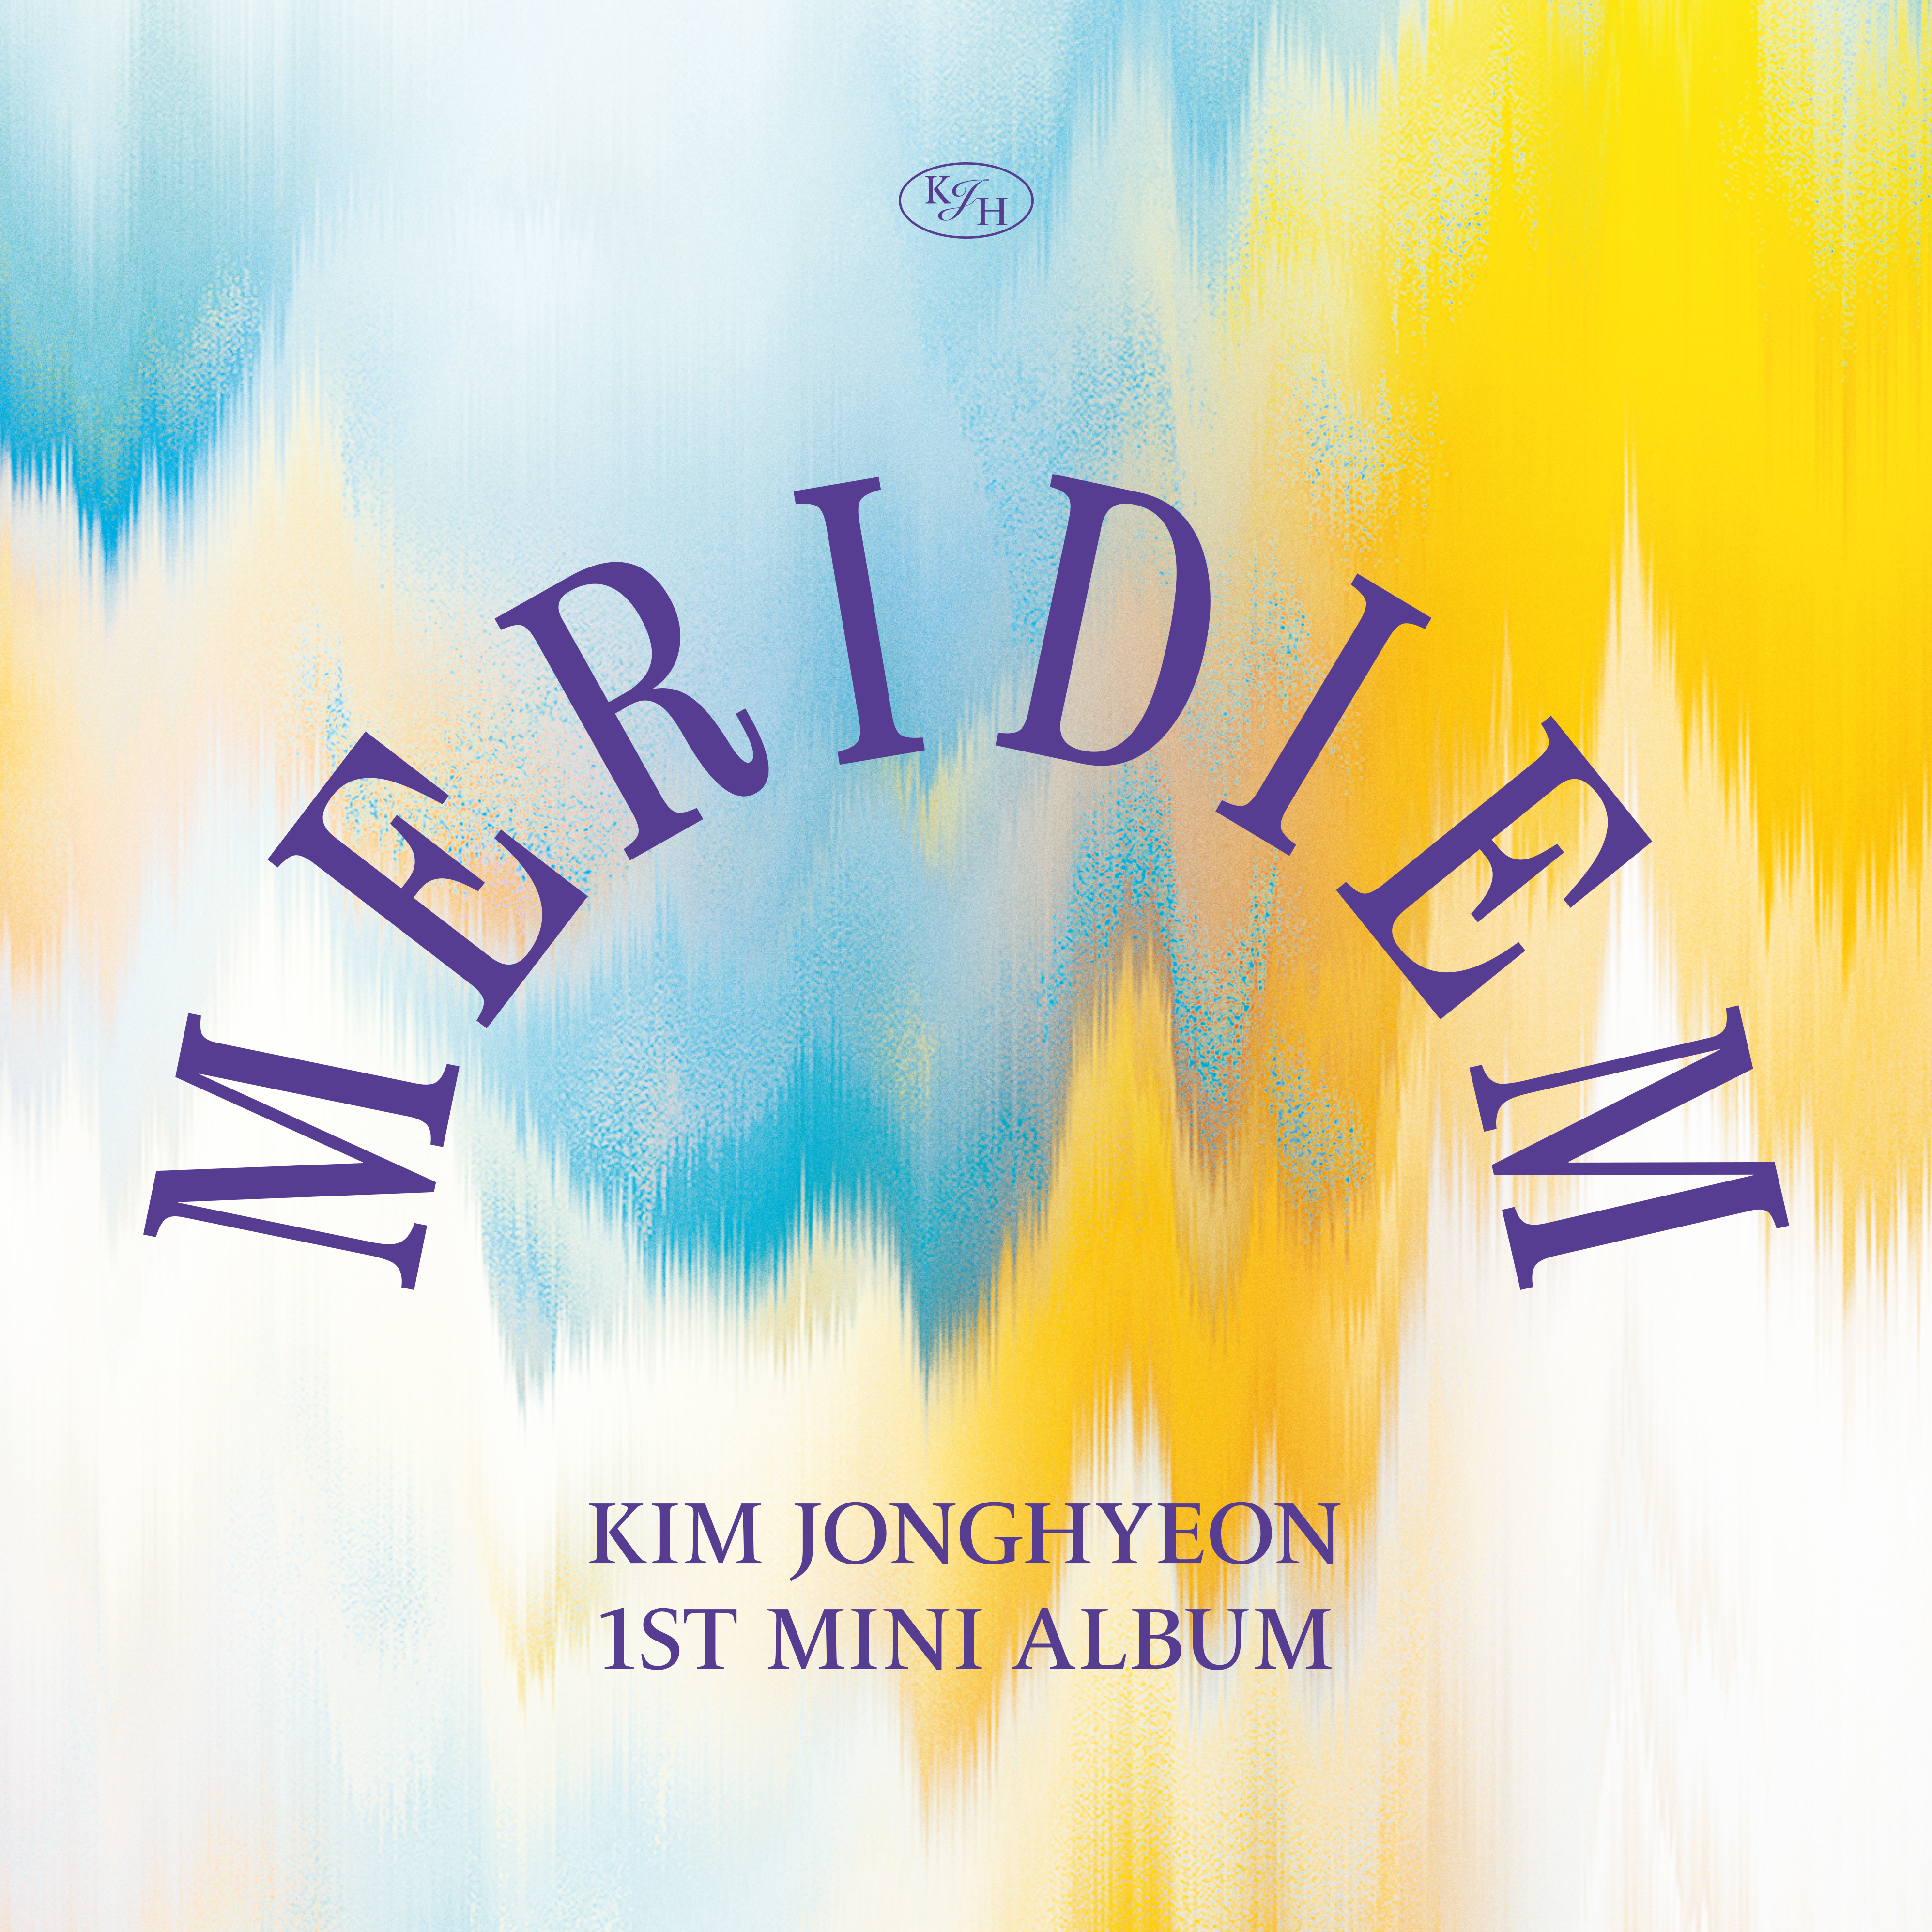 [影音] 金鍾炫(JR) - MERIDIEM